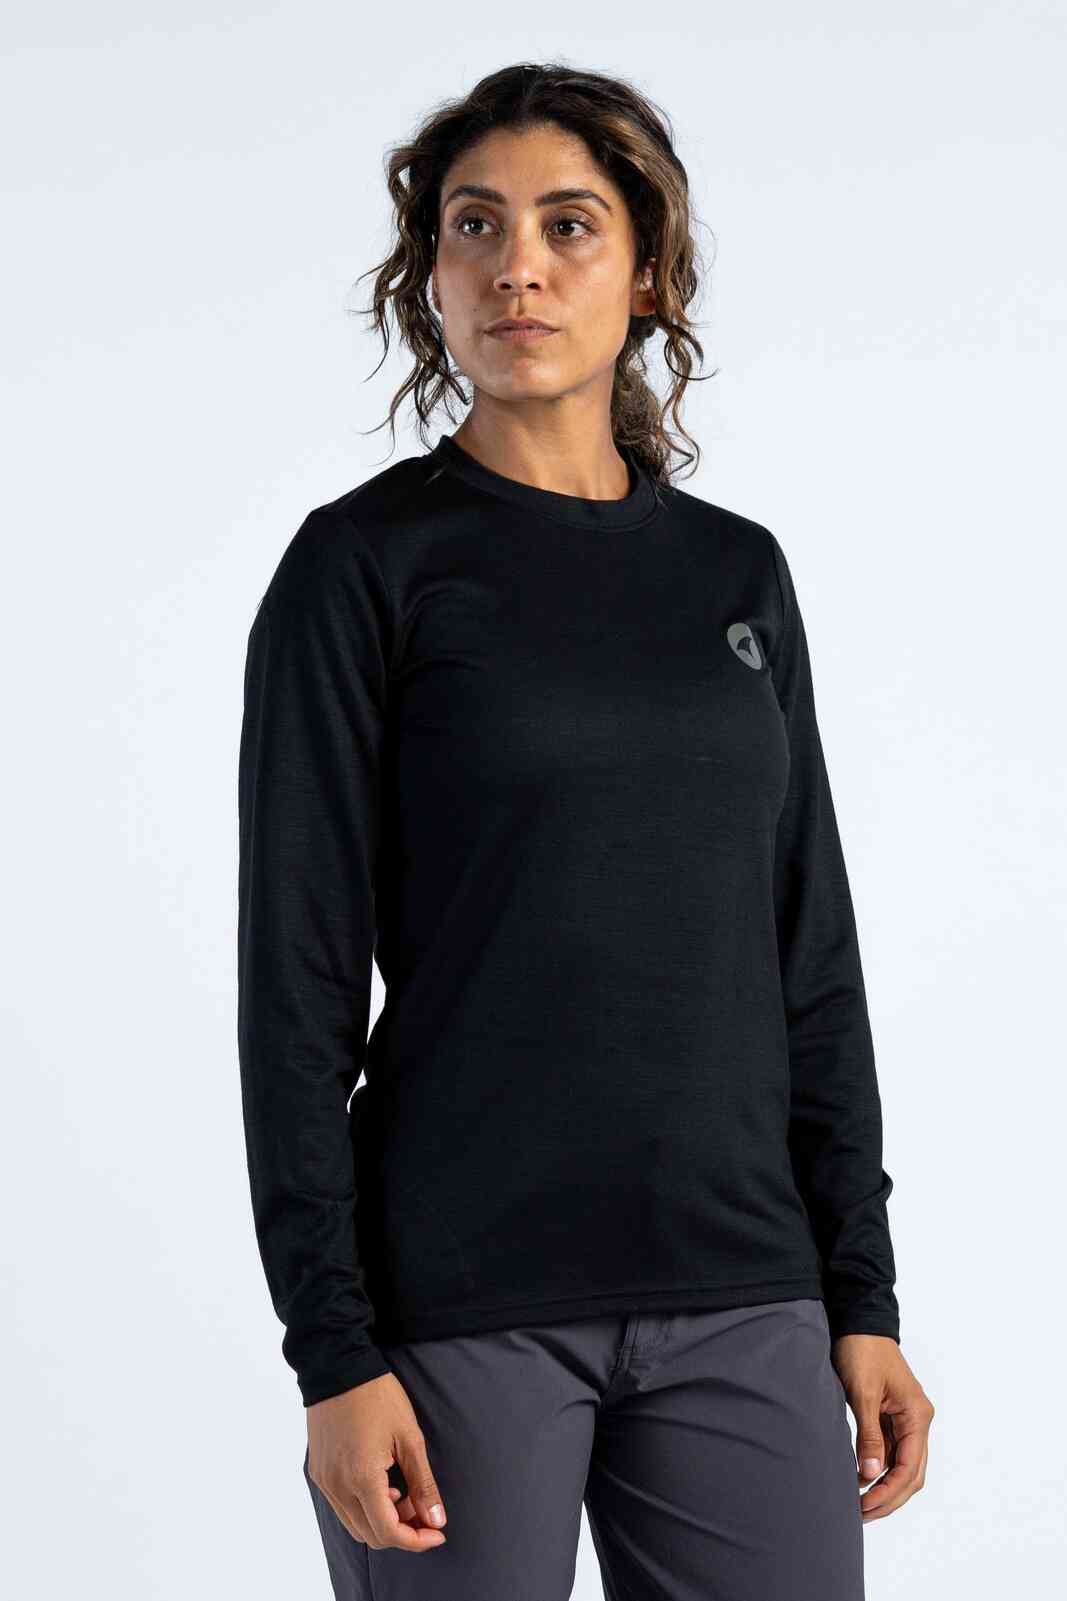 Women's Merino Wool Long Sleeve MTB Jersey - Front View